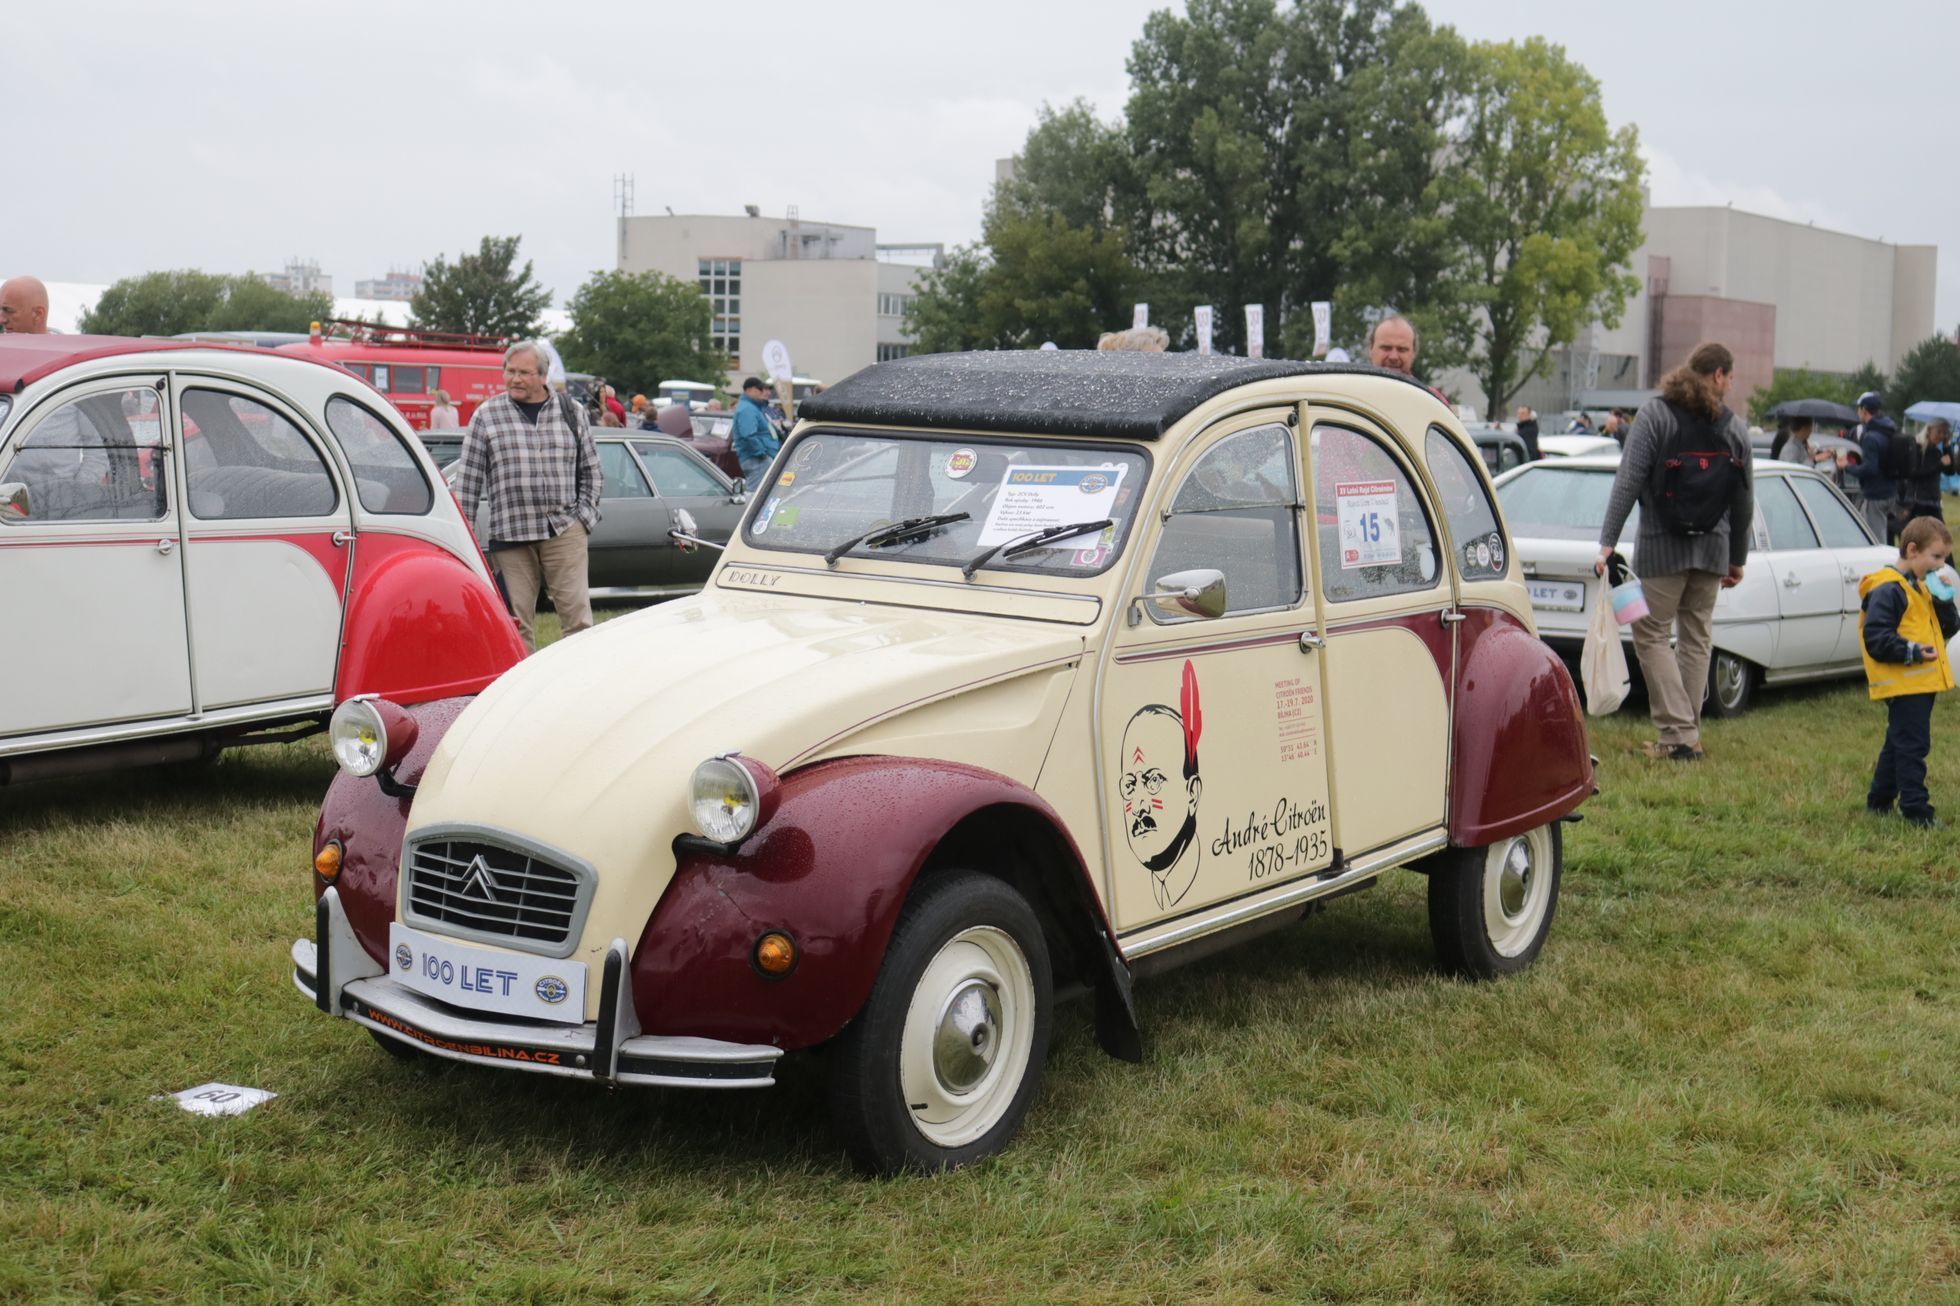 Citroën 100 let oslava Praha Letňany